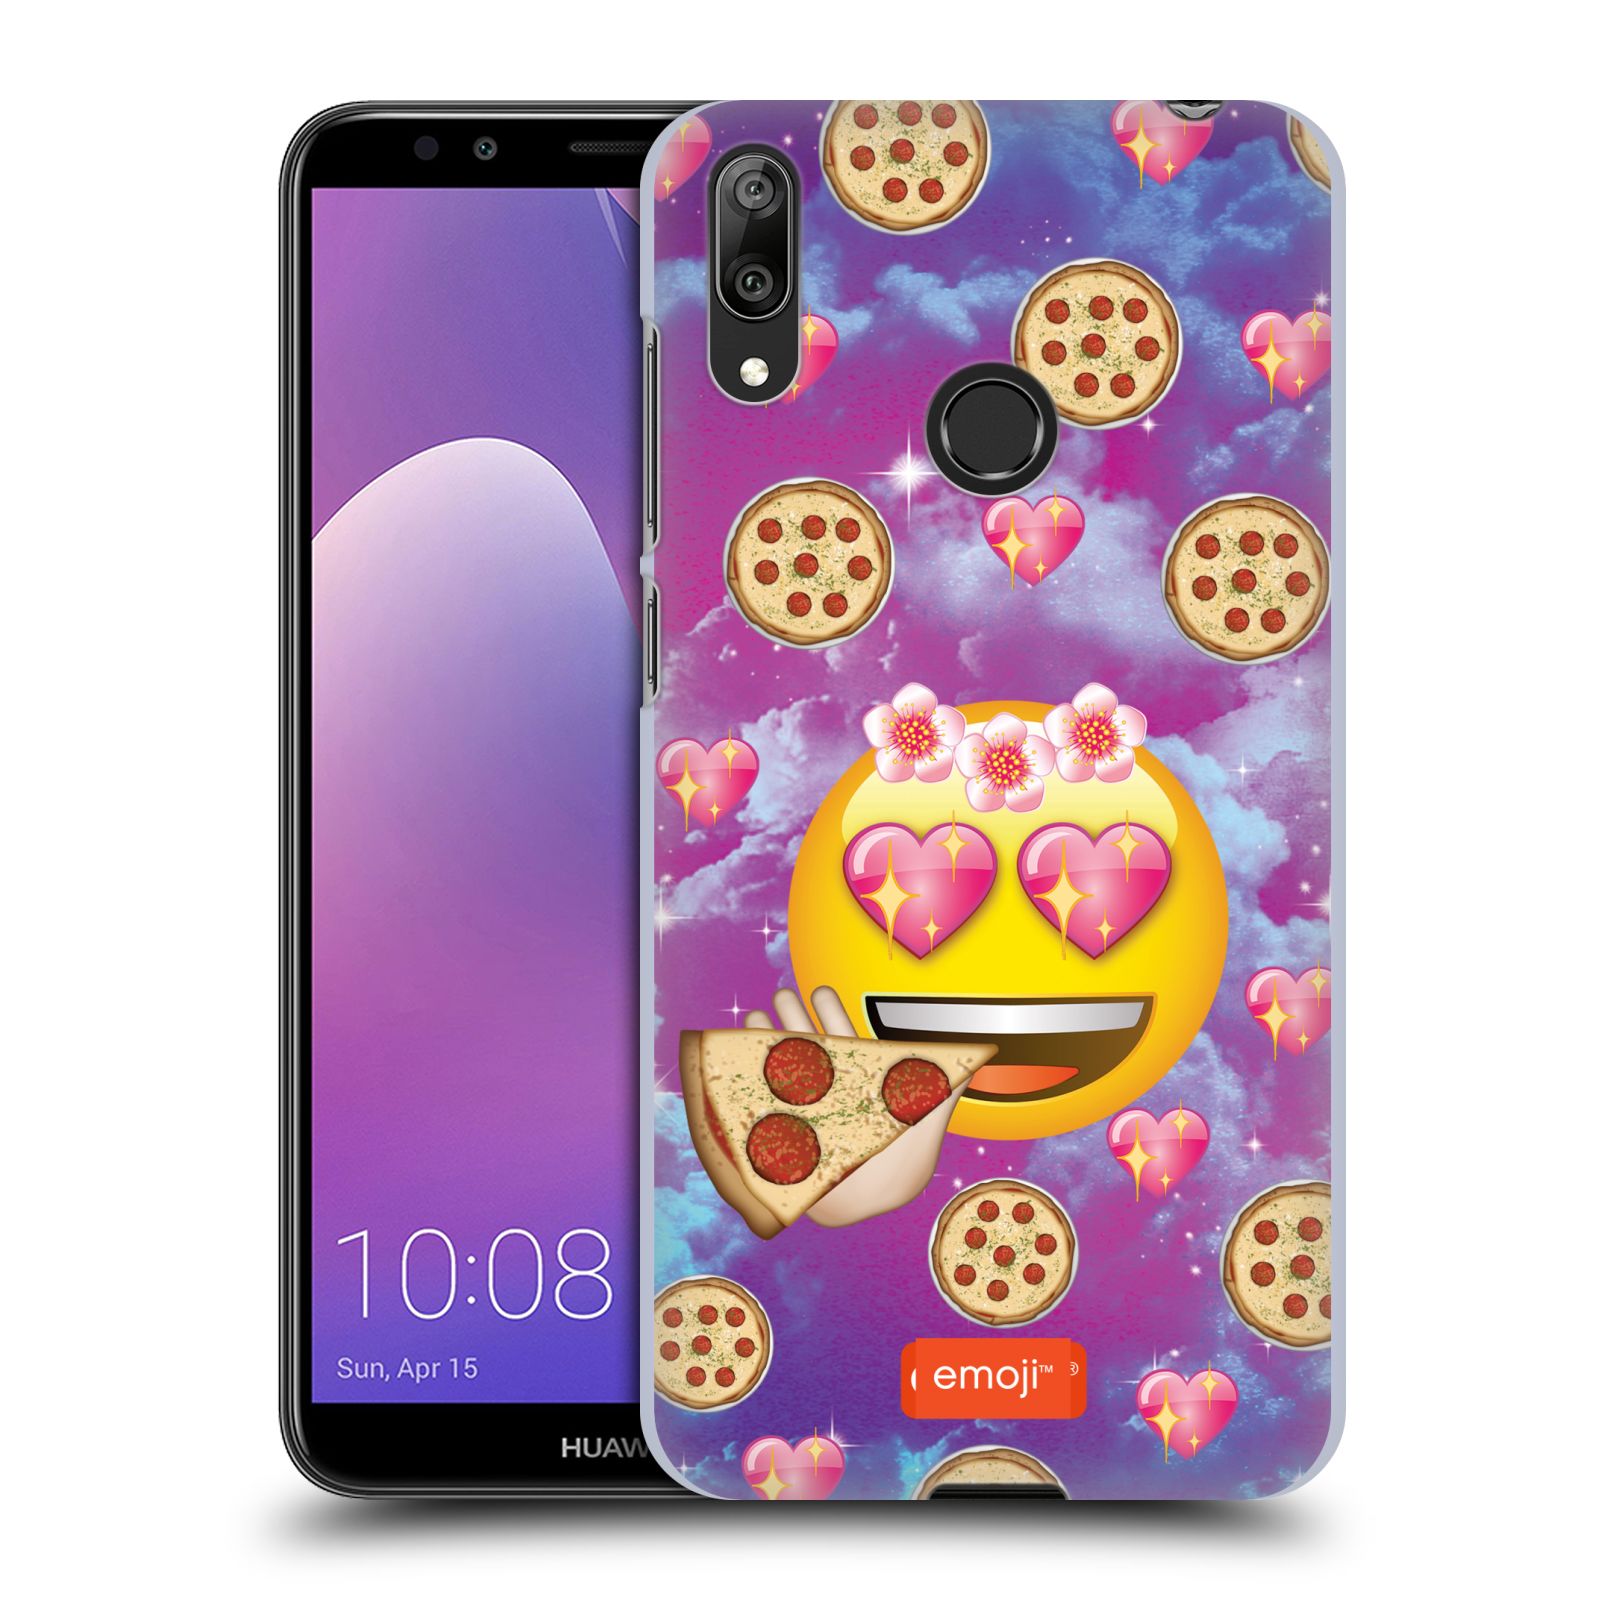 Pouzdro na mobil Huawei Y7 2019 - Head Case - smajlík oficiální kryt EMOJI velký smajlík milovník pizzy